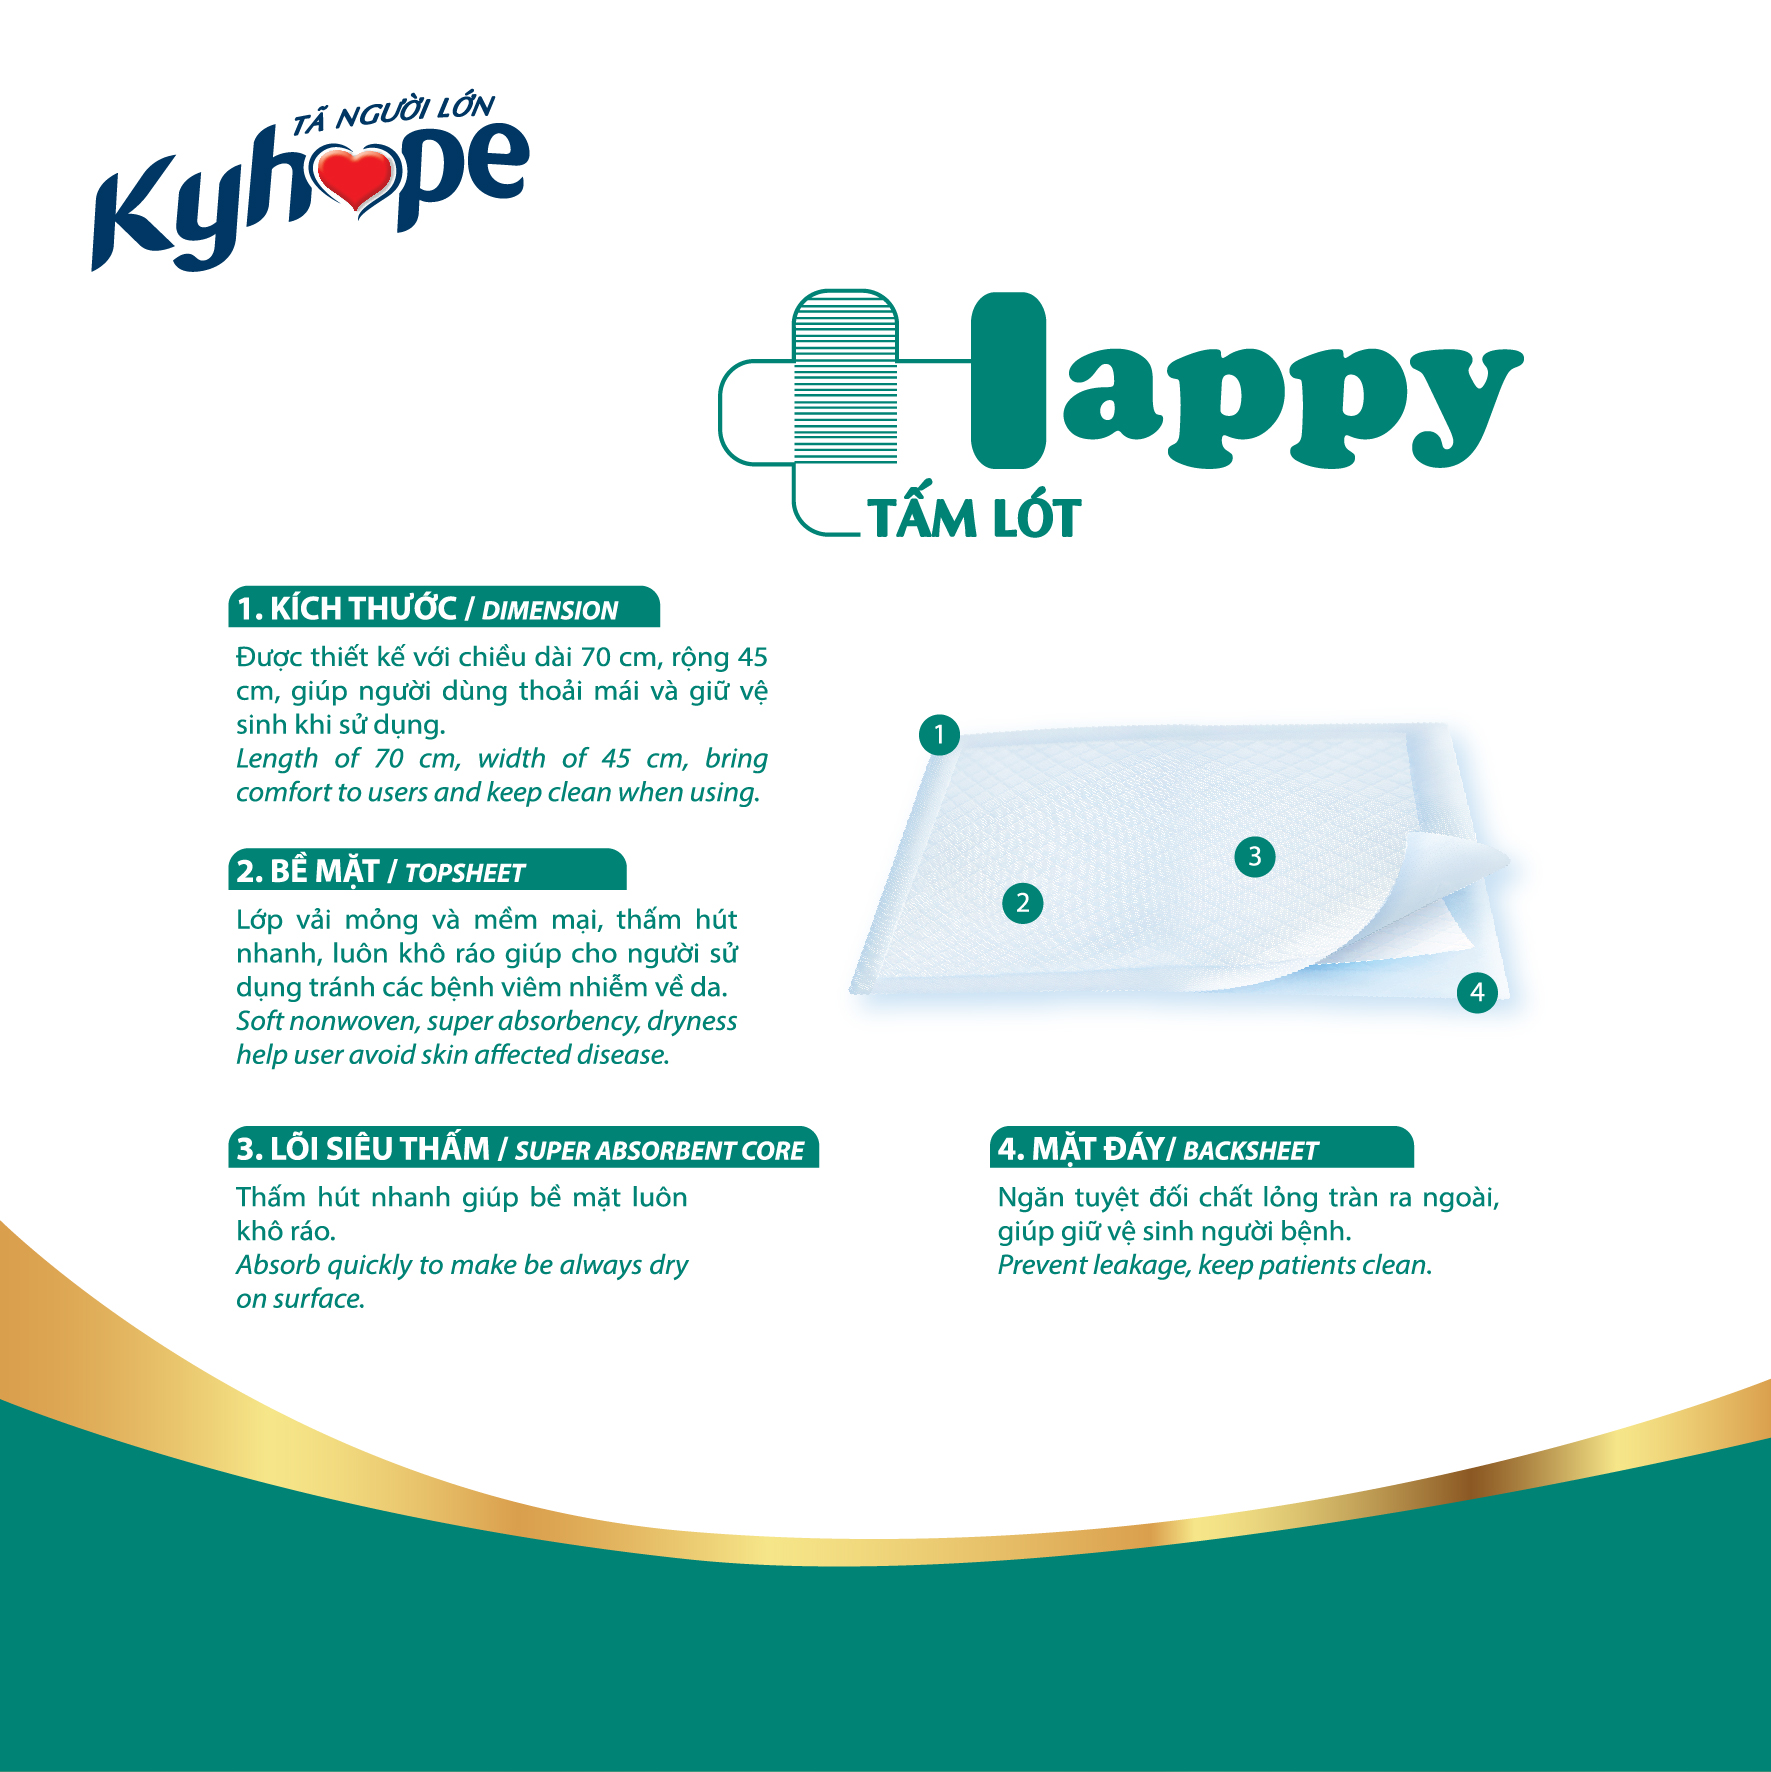 Bộ 10 gói Tấm lót Kyhope HAPPY size M công nghệ Nhật Bản kháng khuẩn, loại bỏ mùi, gói 10 miếng dành cho người lớn